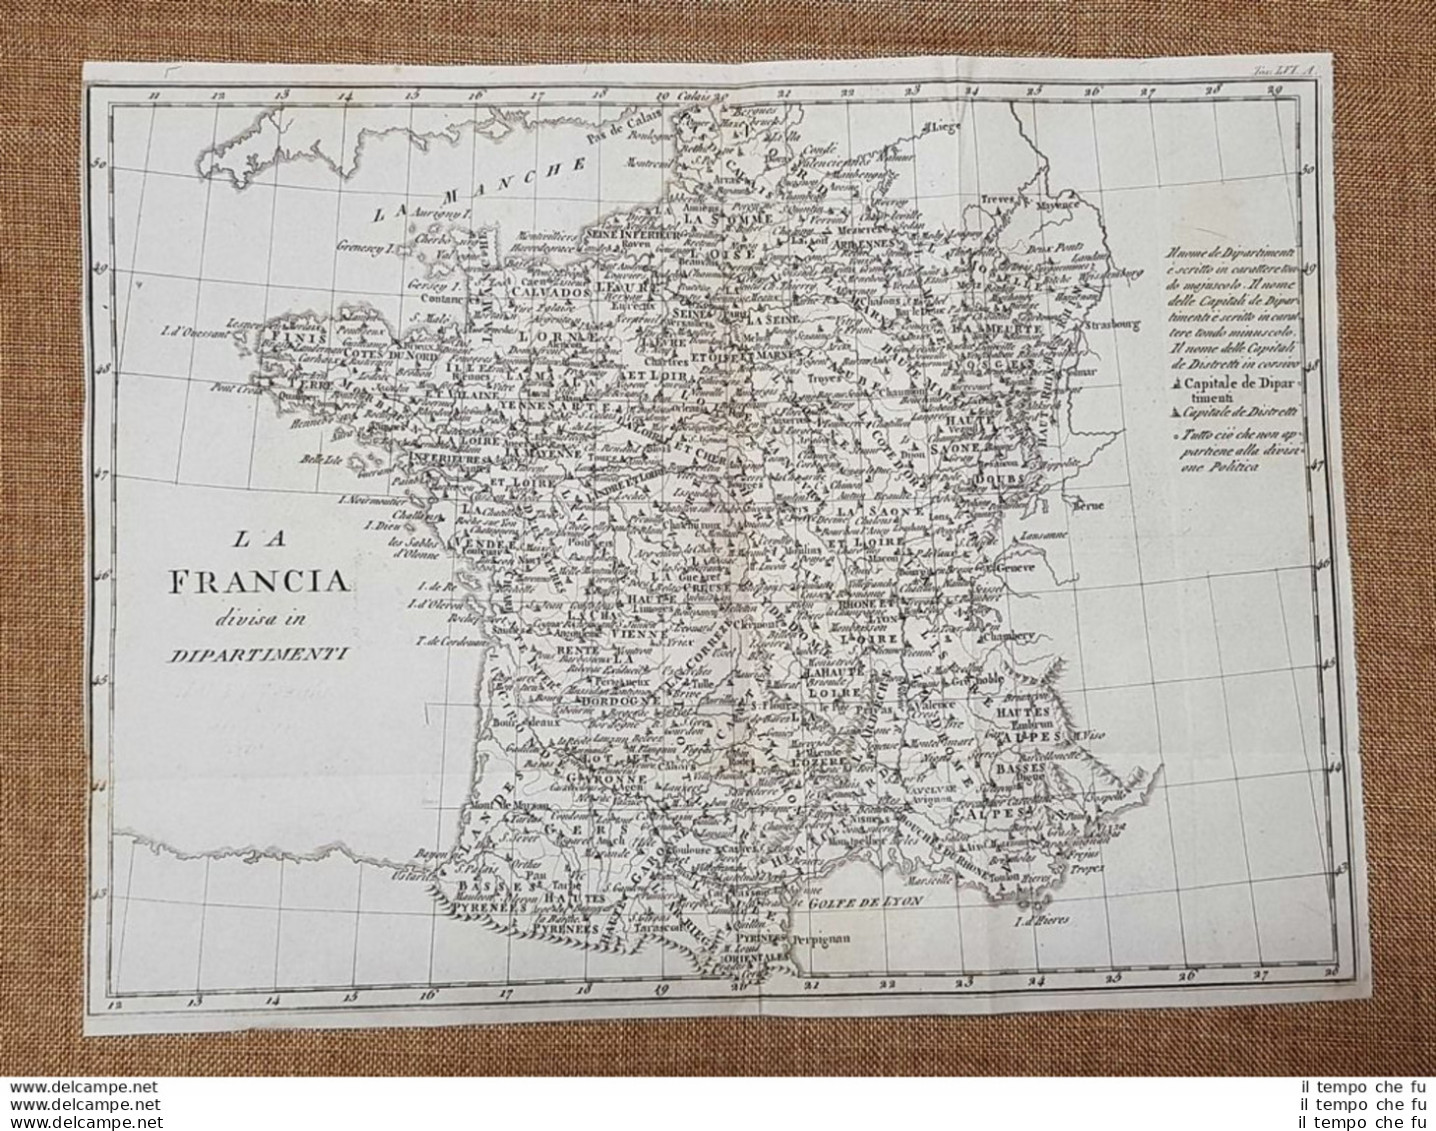 Carta Geografica O Mappa Francia Divisa In Dipartimenti Leonardo Cacciatore 1831 - Geographical Maps